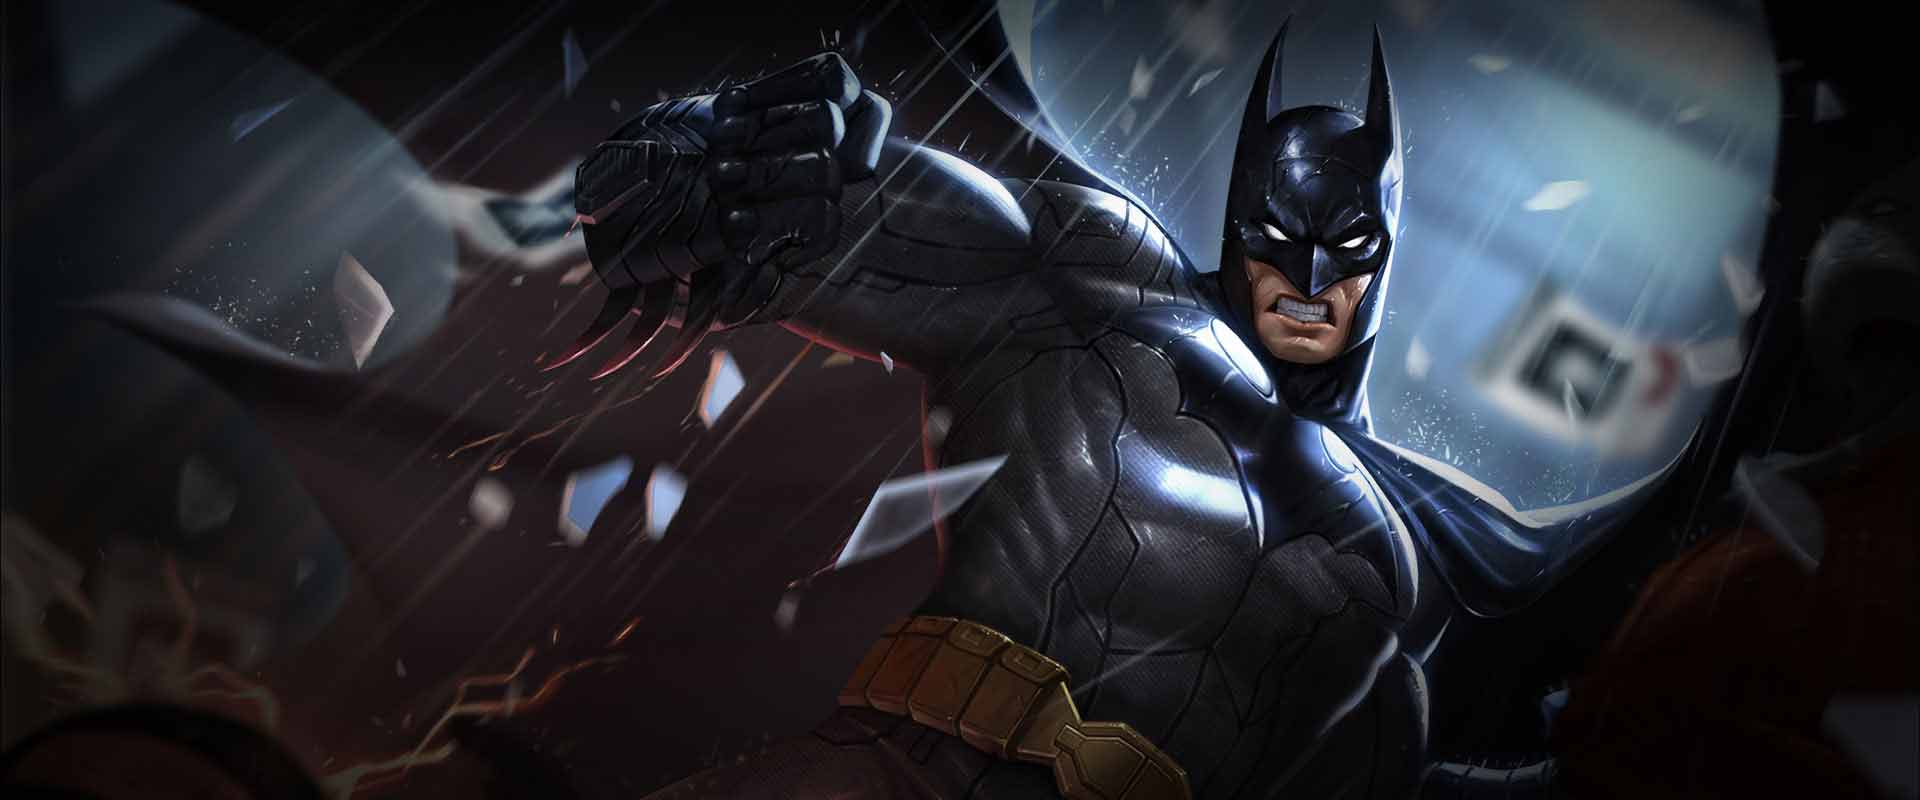 Liên Quân Mobile: Batman được làm lại hình ảnh và cốt truyện, không còn là siêu anh hùng?